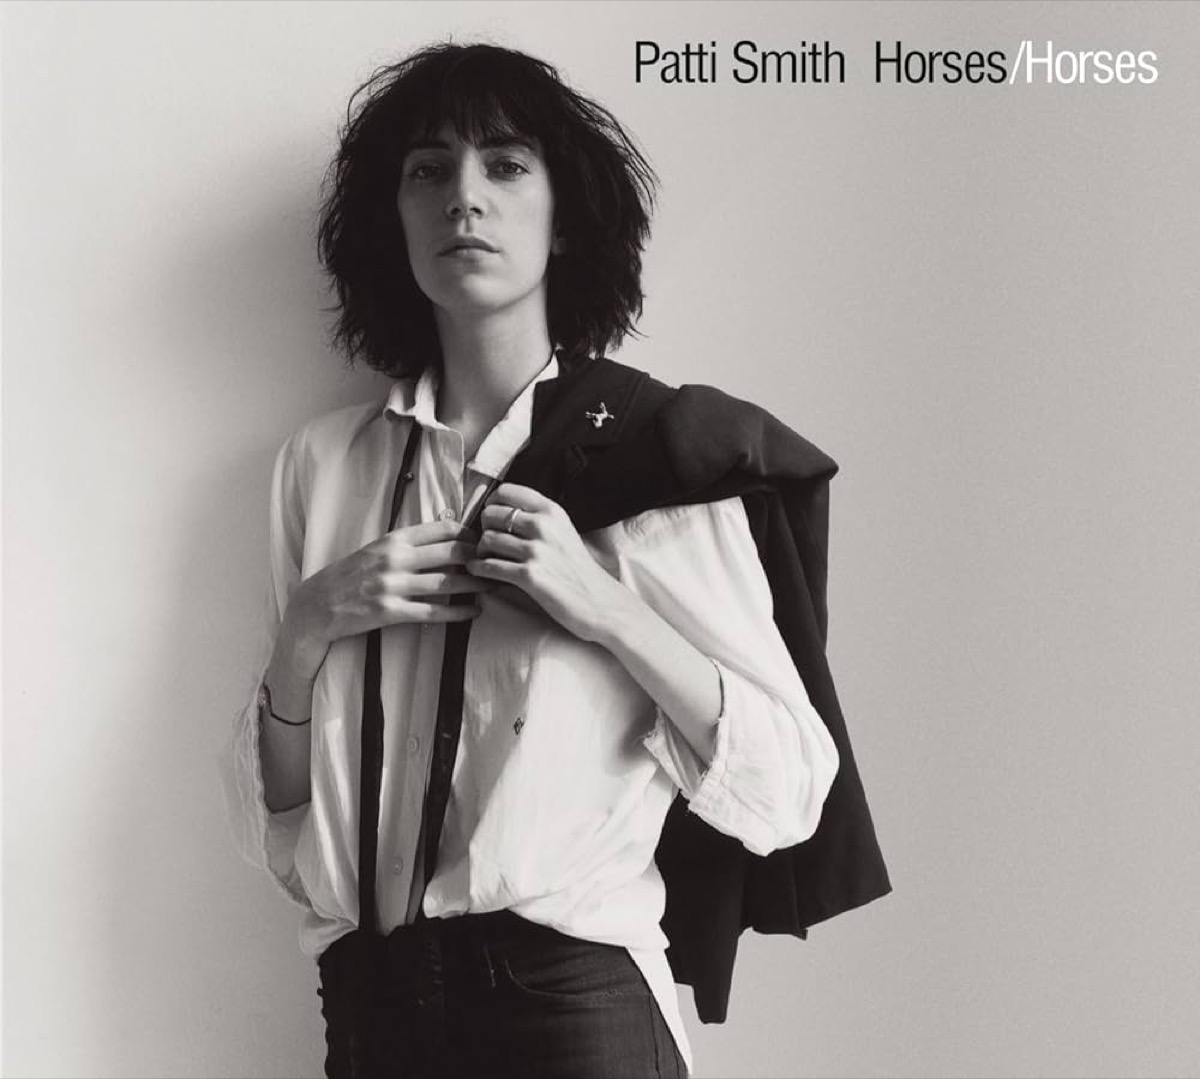 "Horses" by Patti Smith album cover